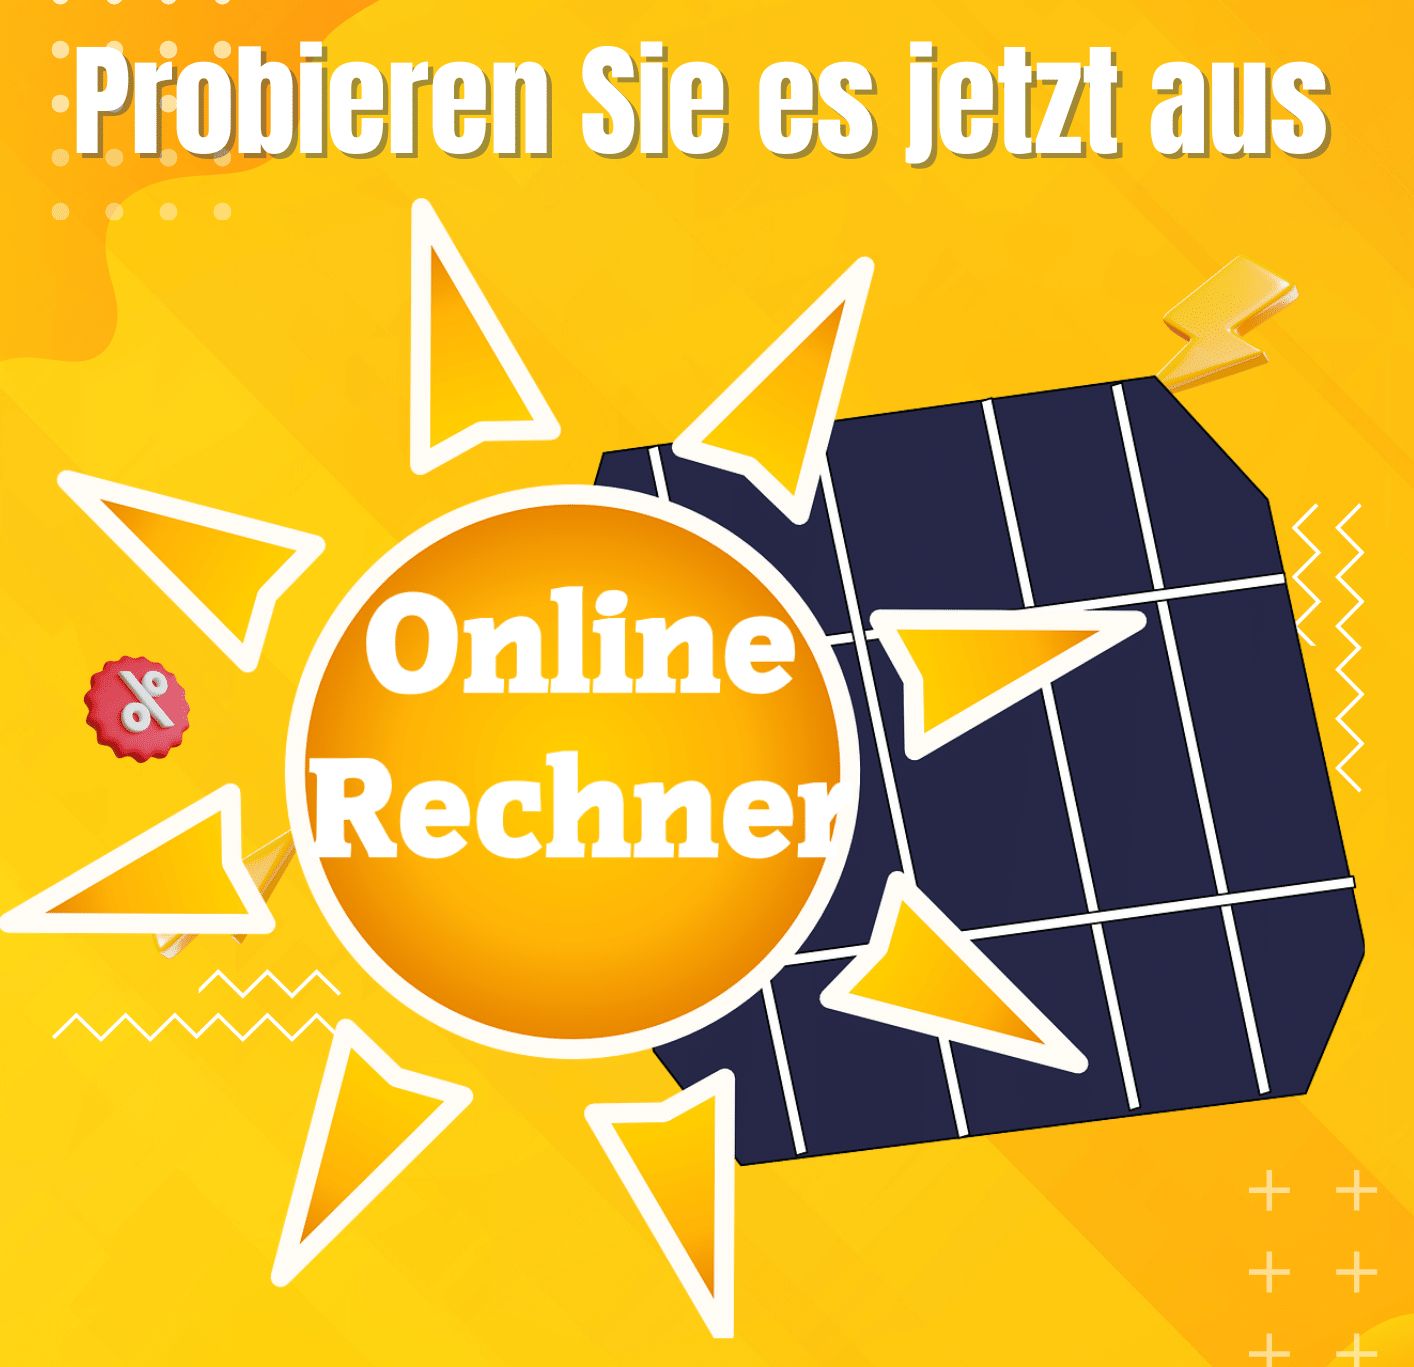 Optimieren Sie die Leistung Ihrer Photovoltaikanlage mit unserem einfachen Online-Rechner.